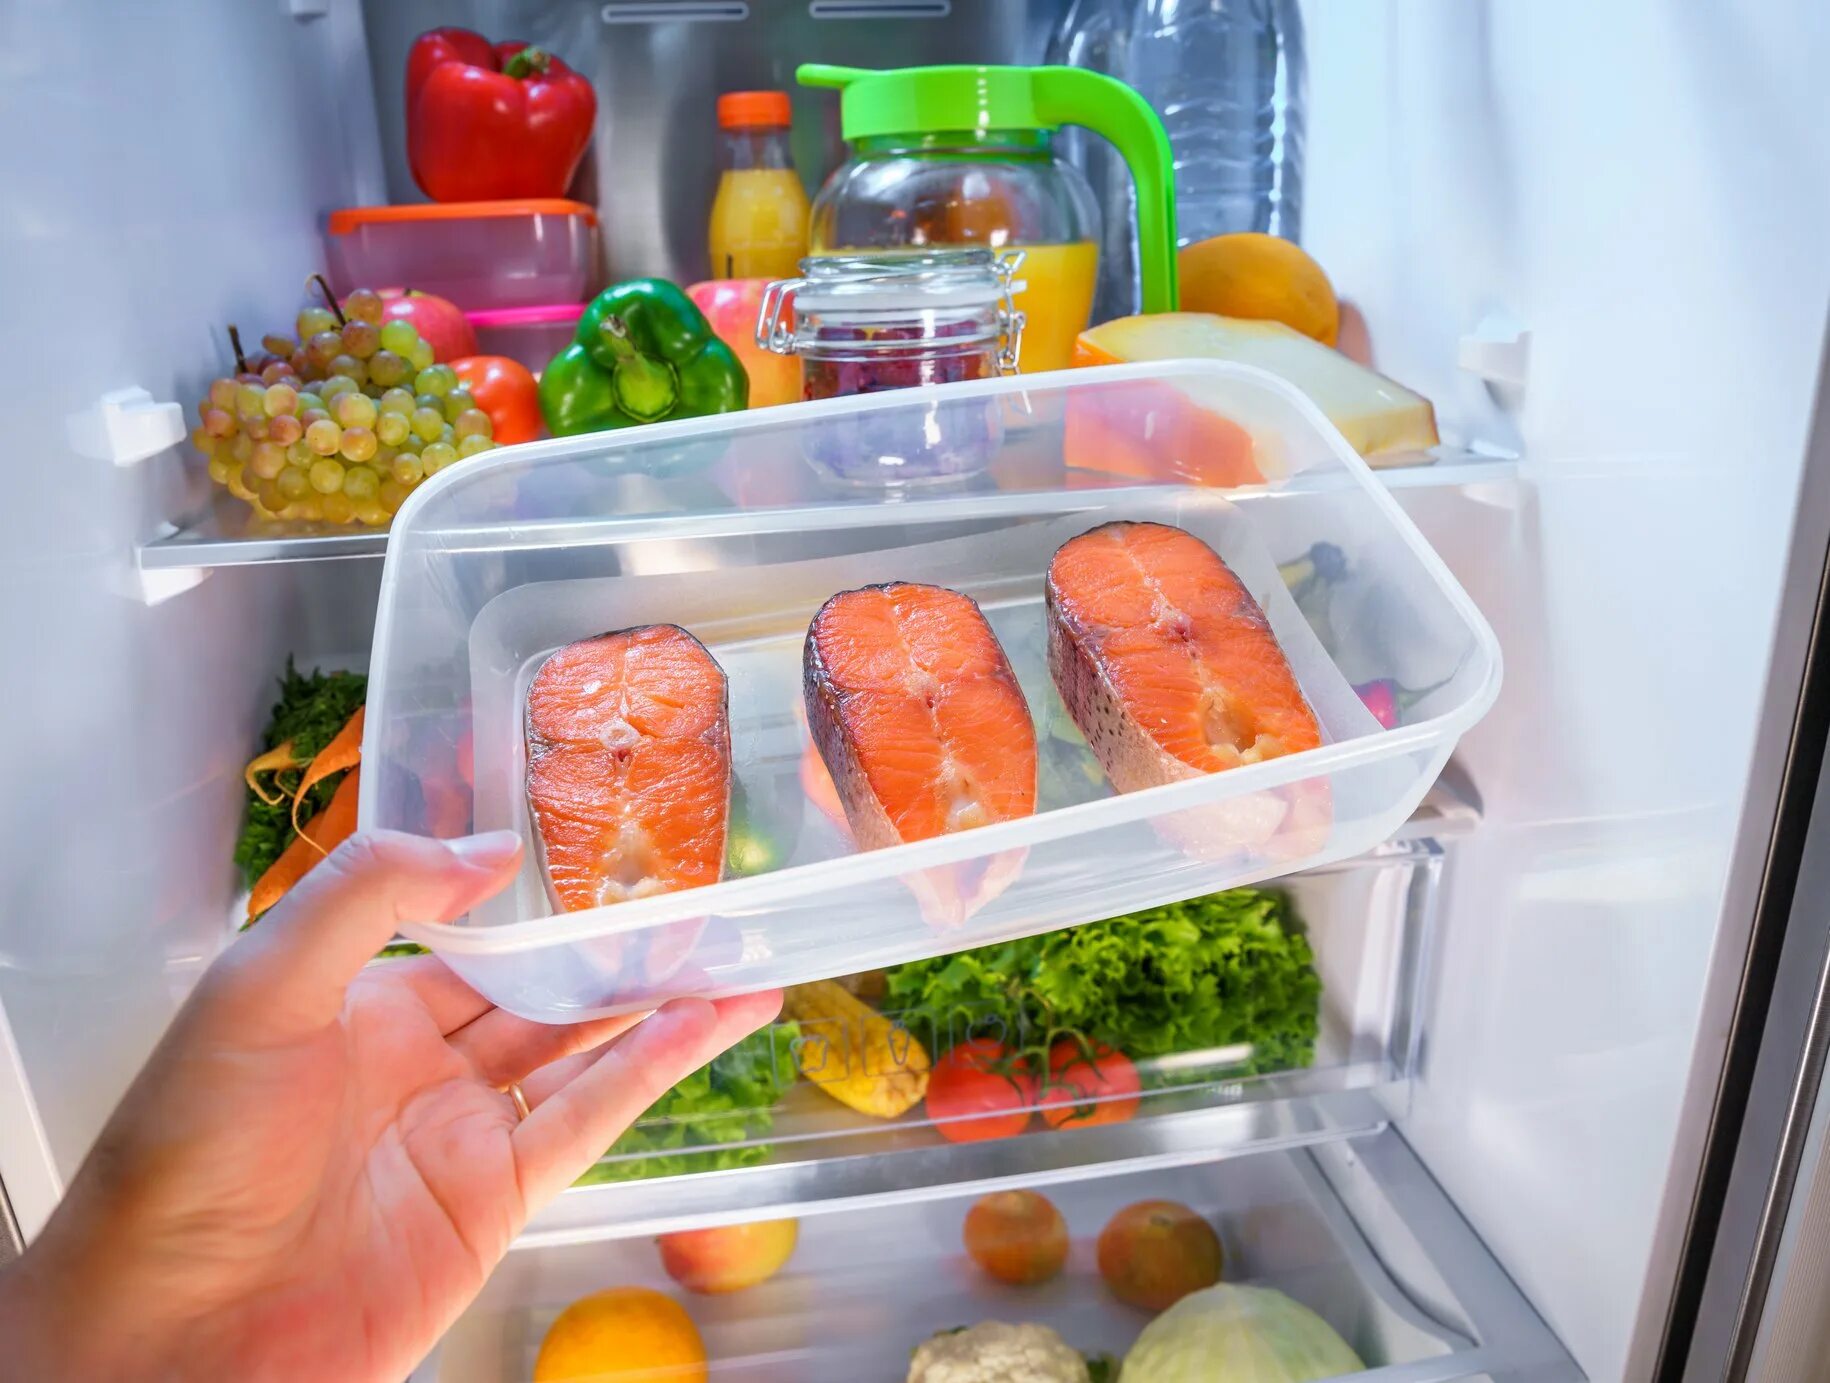 Сколько нужно размораживать холодильник. Хранение продуктов. Холодильник с едой. Холодильник с продуктами. Хранение готовых блюд в холодильнике.